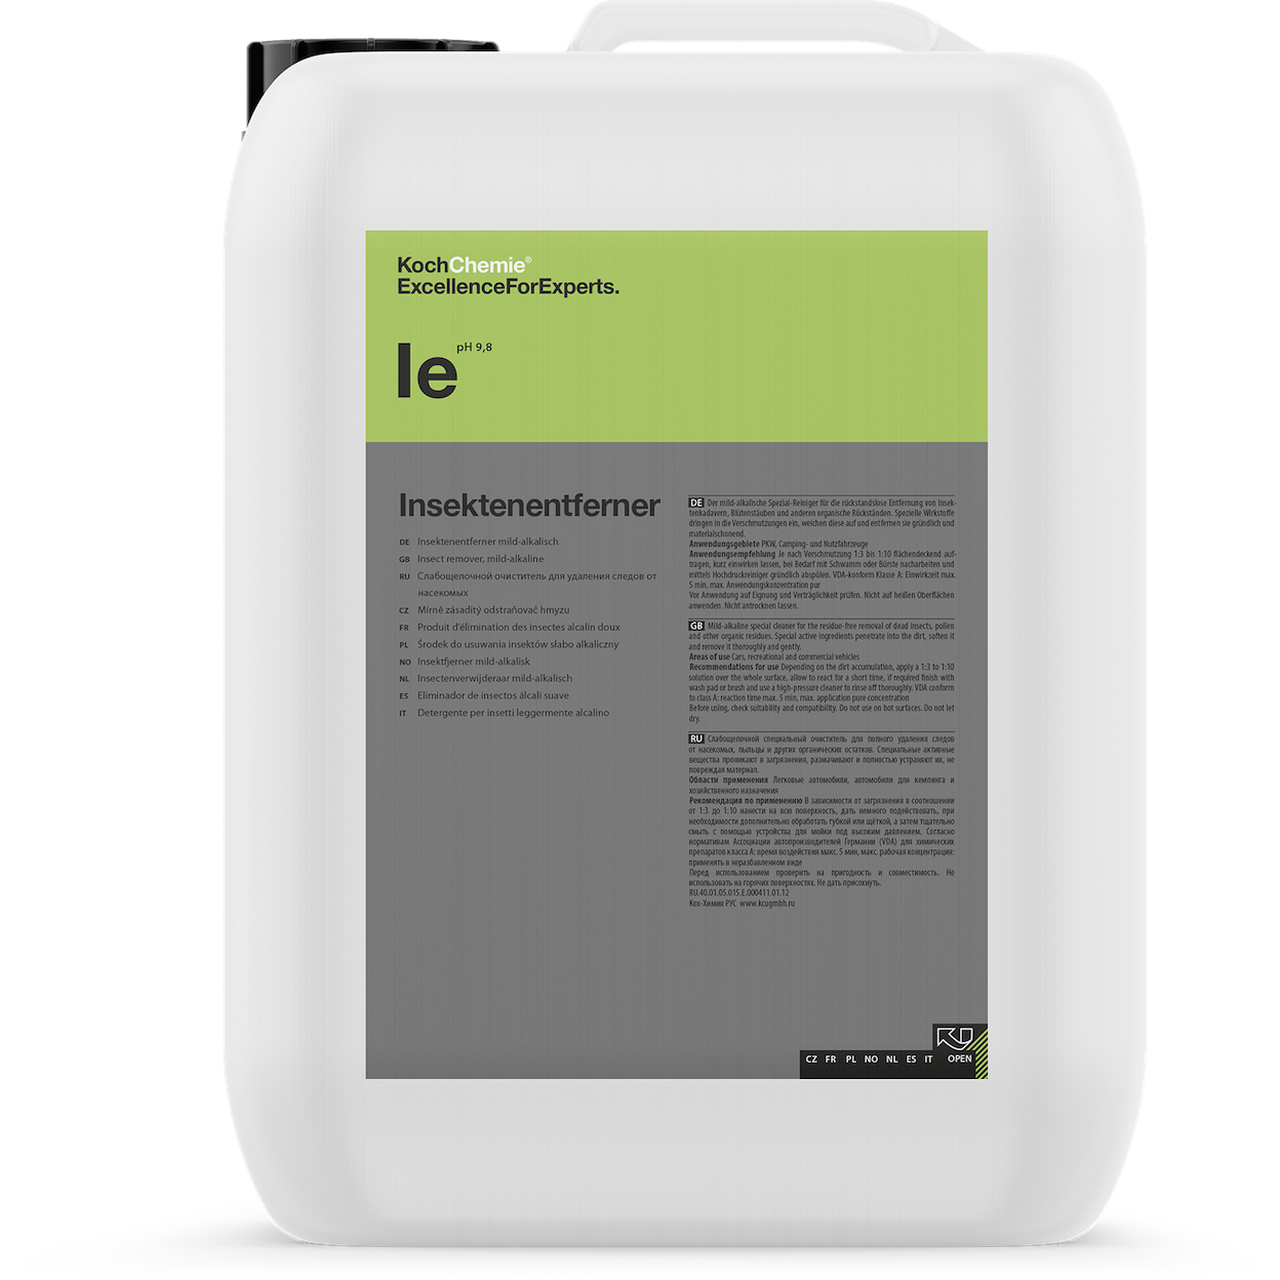 IE - Insektenentferner - Detergente especial alcalino para remoção de insetos, óleo e contaminações orgânicas - 11Kg